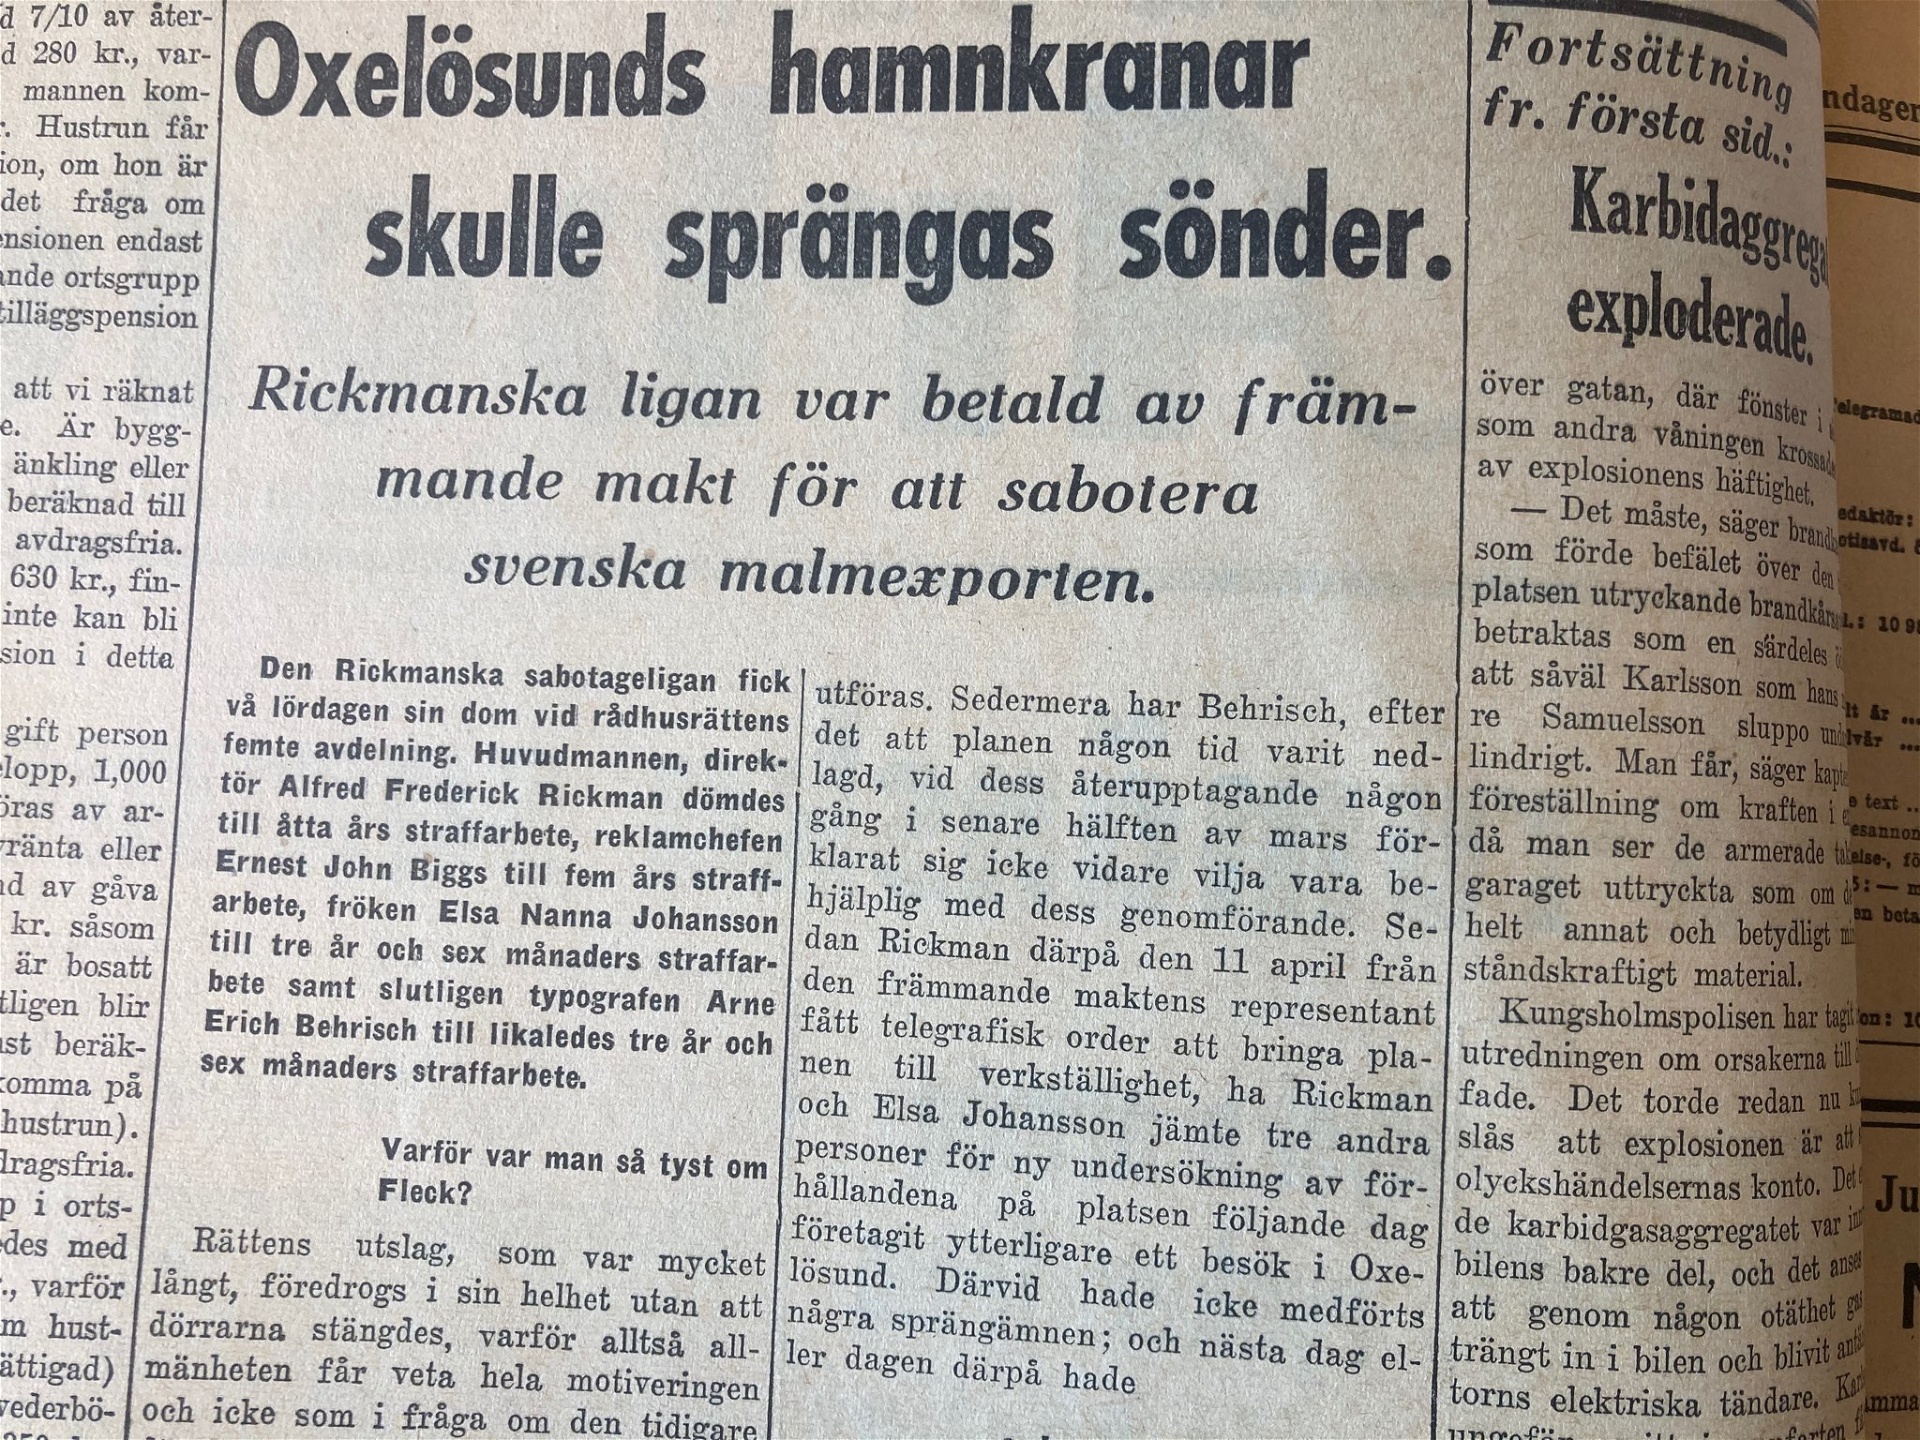 Foto: Arbetaren den 1 juli 1940Medlemmar i den "rickmanska" sabotageligan dömdes till straffarbete av en svensk domstol. Gruppen ville förhindra att Sverige exporterade malm till Nazityskland.